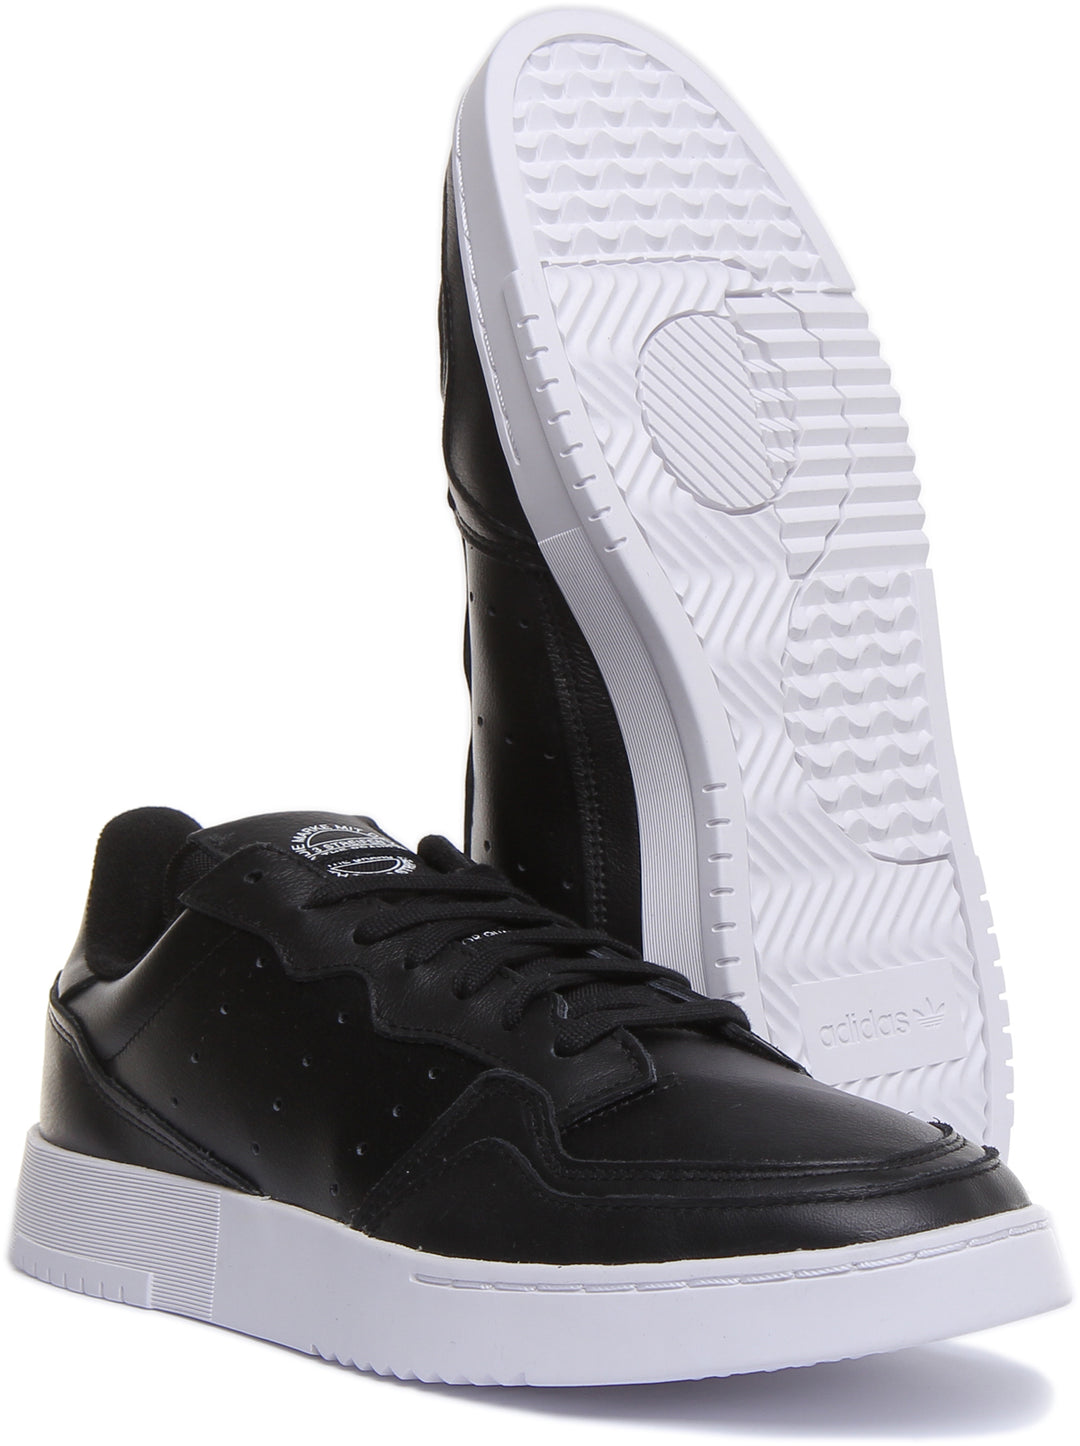 Adidas Supercourt Zapatillas de deporte con cordones inspiradas en el tenis para en negro blanco